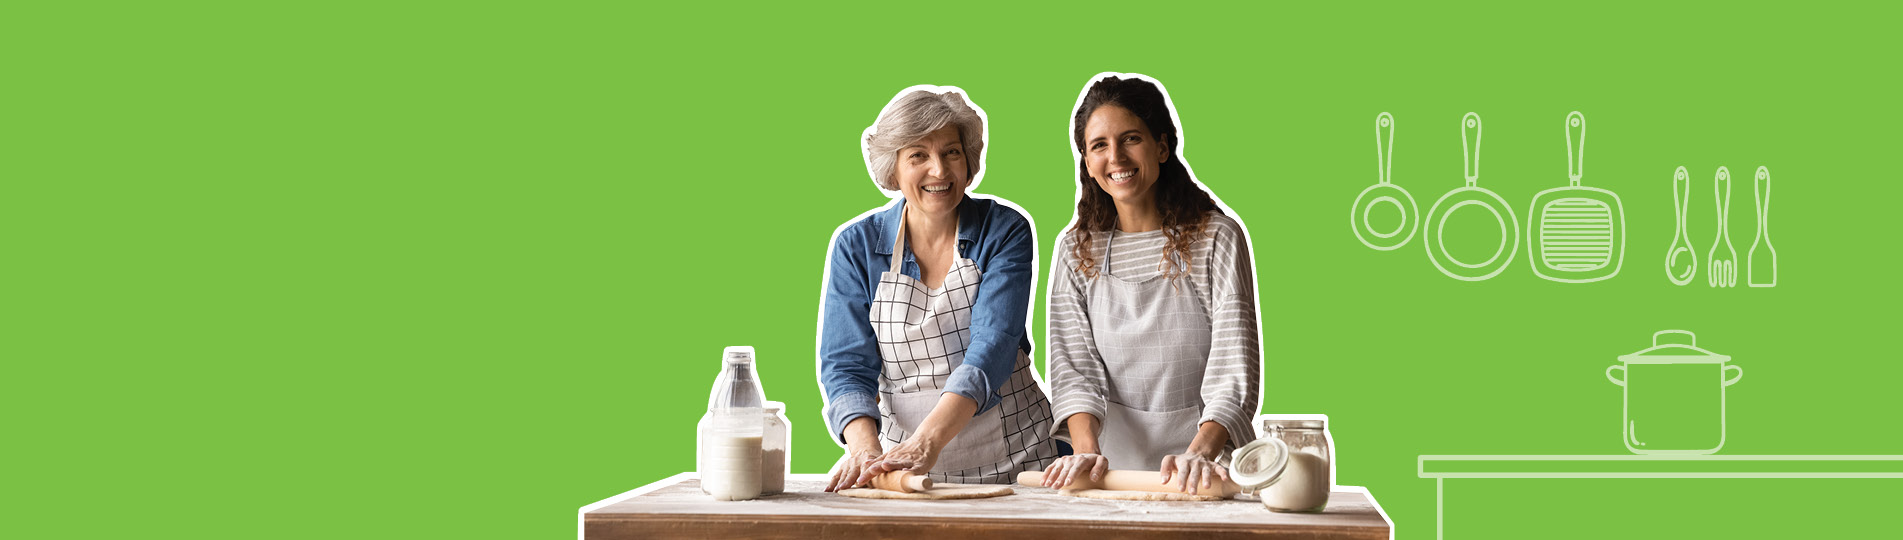 smiling women rolling dough